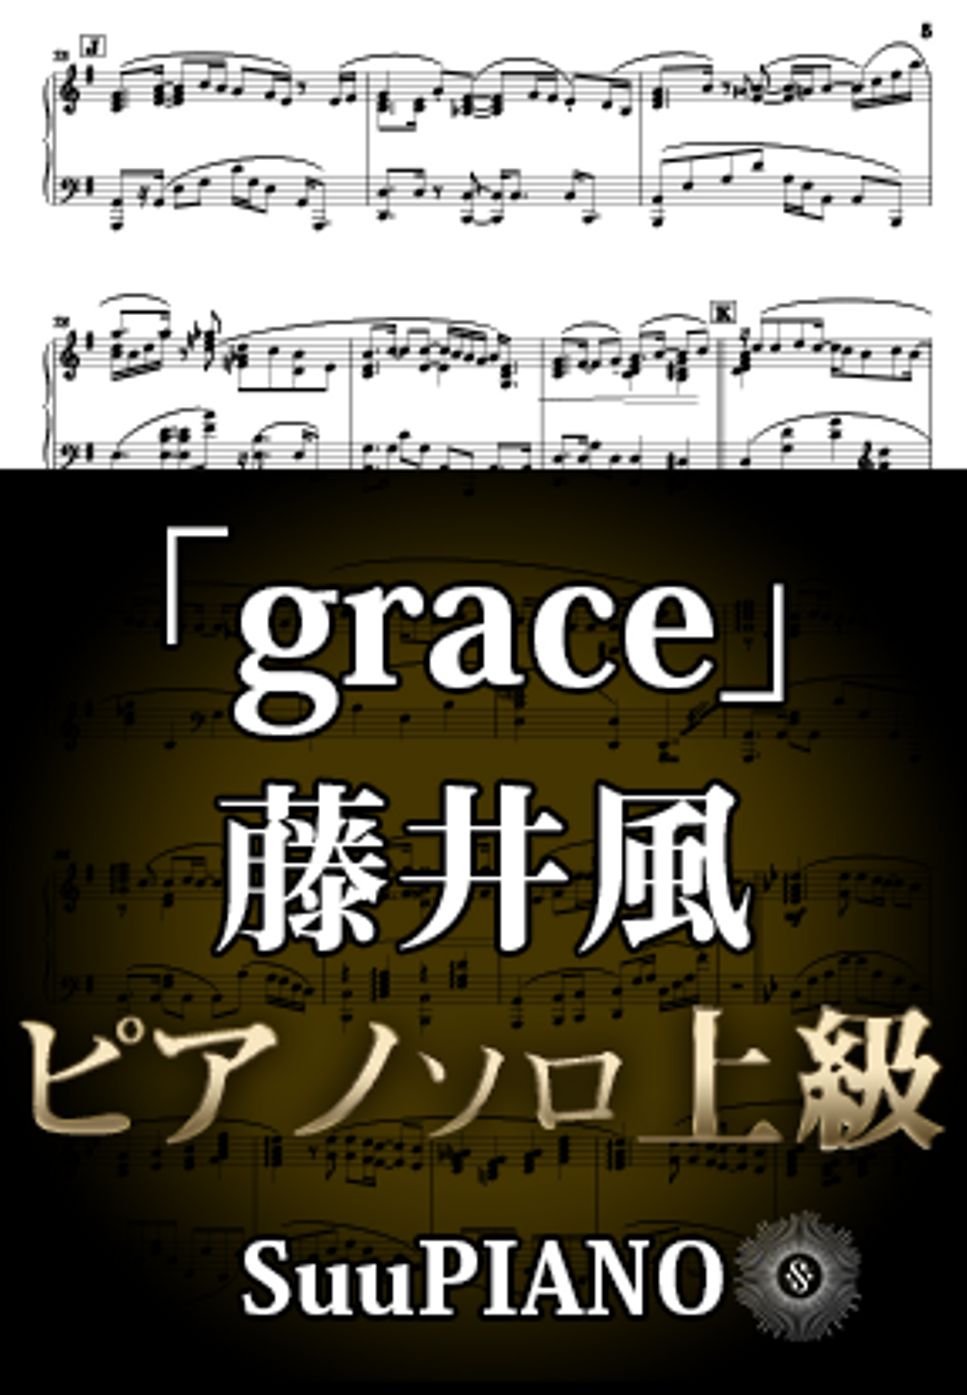 藤井風 - grace (ピアノソロ上級/ 「docomo future project」TVCM) by Suu